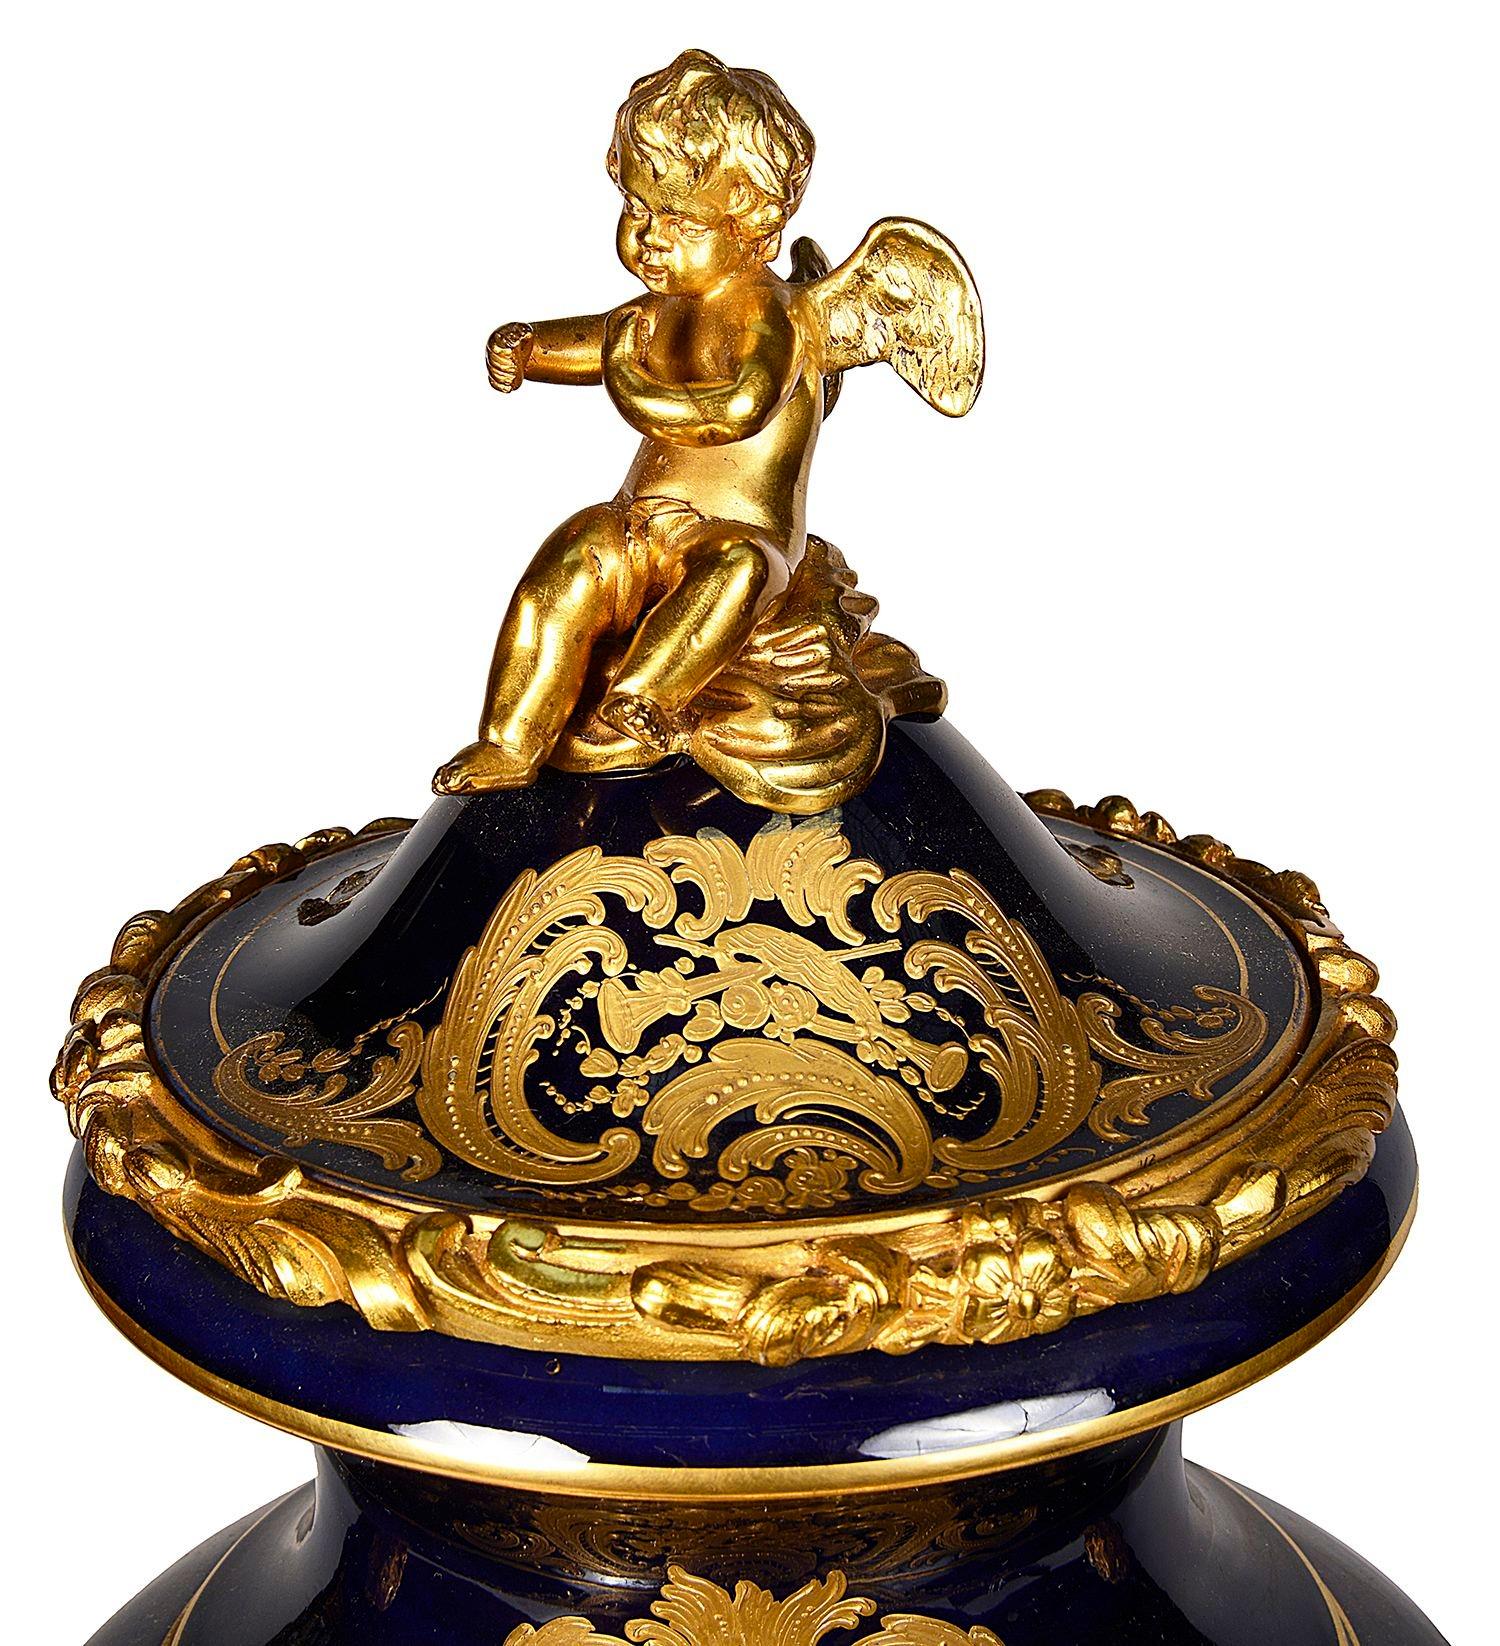 Très bonne qualité de vase / horloge en porcelaine de style Sèvres de la fin du 19e siècle. Avec de magnifiques montures en bronze doré, un fleuron en forme de chérubin et des poignées en forme de monopode, une horloge à sonnerie horaire avec cadran